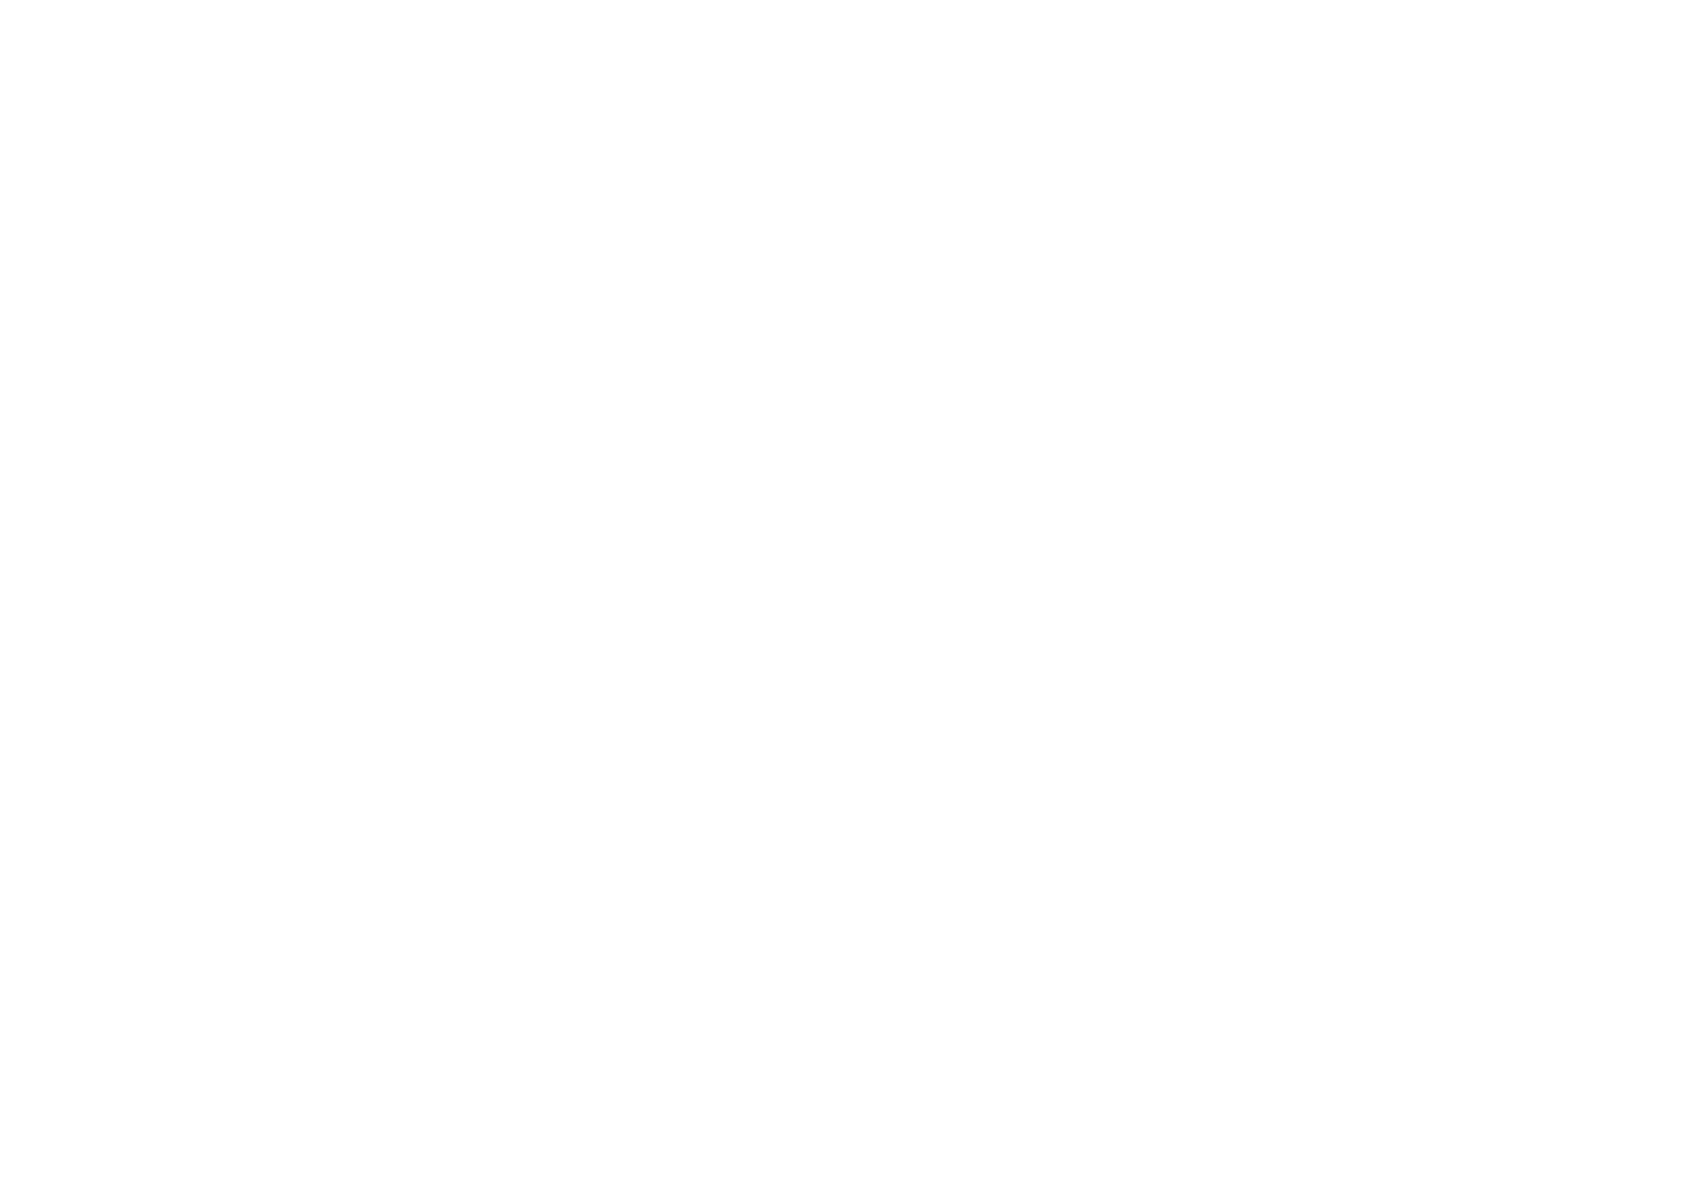 medien-bonn-logo-agentur-event-verlag-white